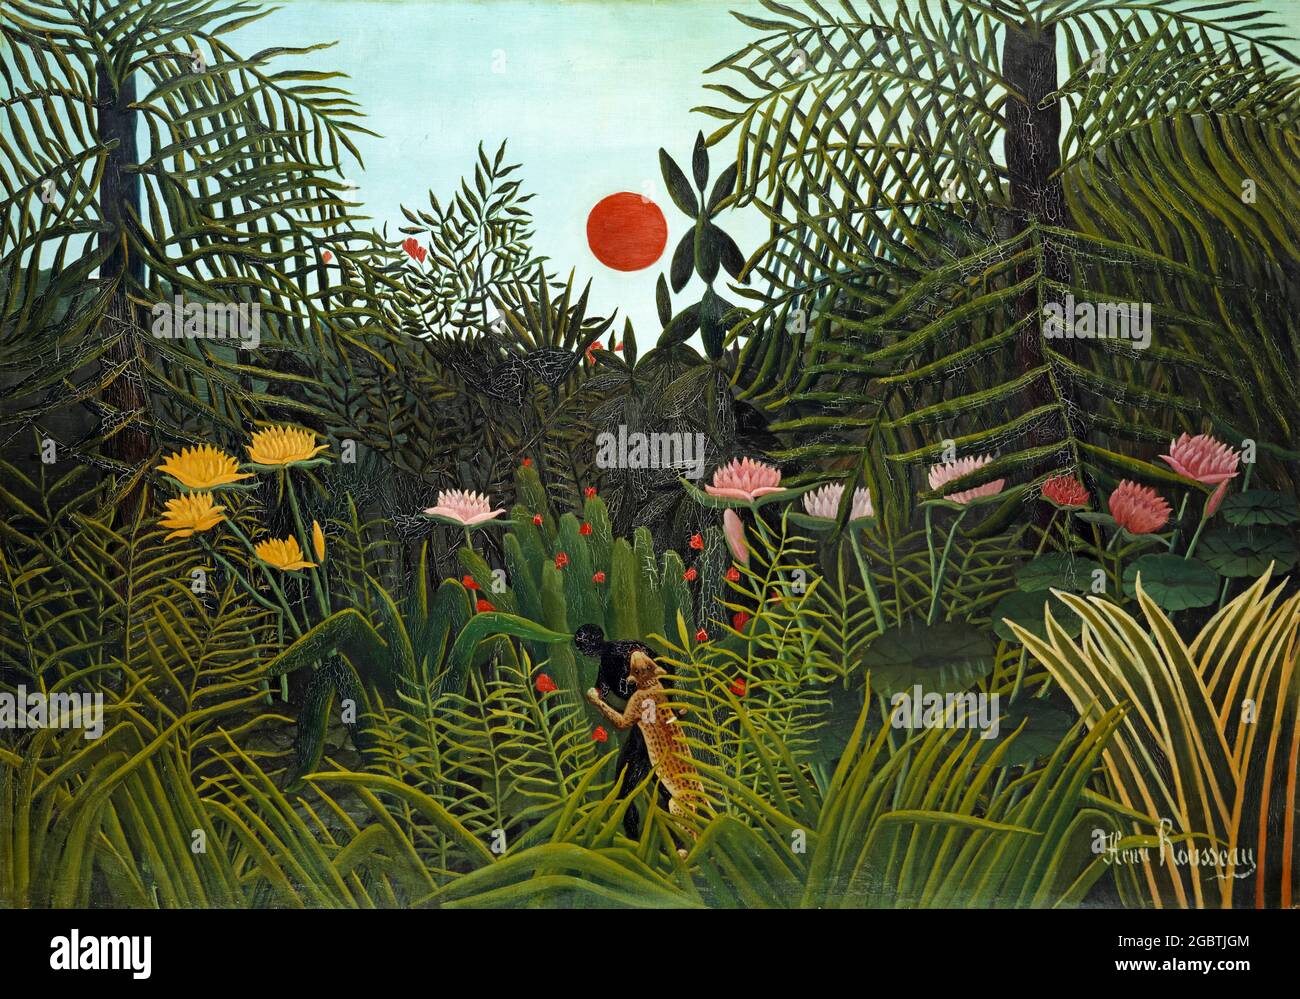 Henri Rousseau, Jungle with Setting Sun, peinture de paysage, vers 1910 Banque D'Images